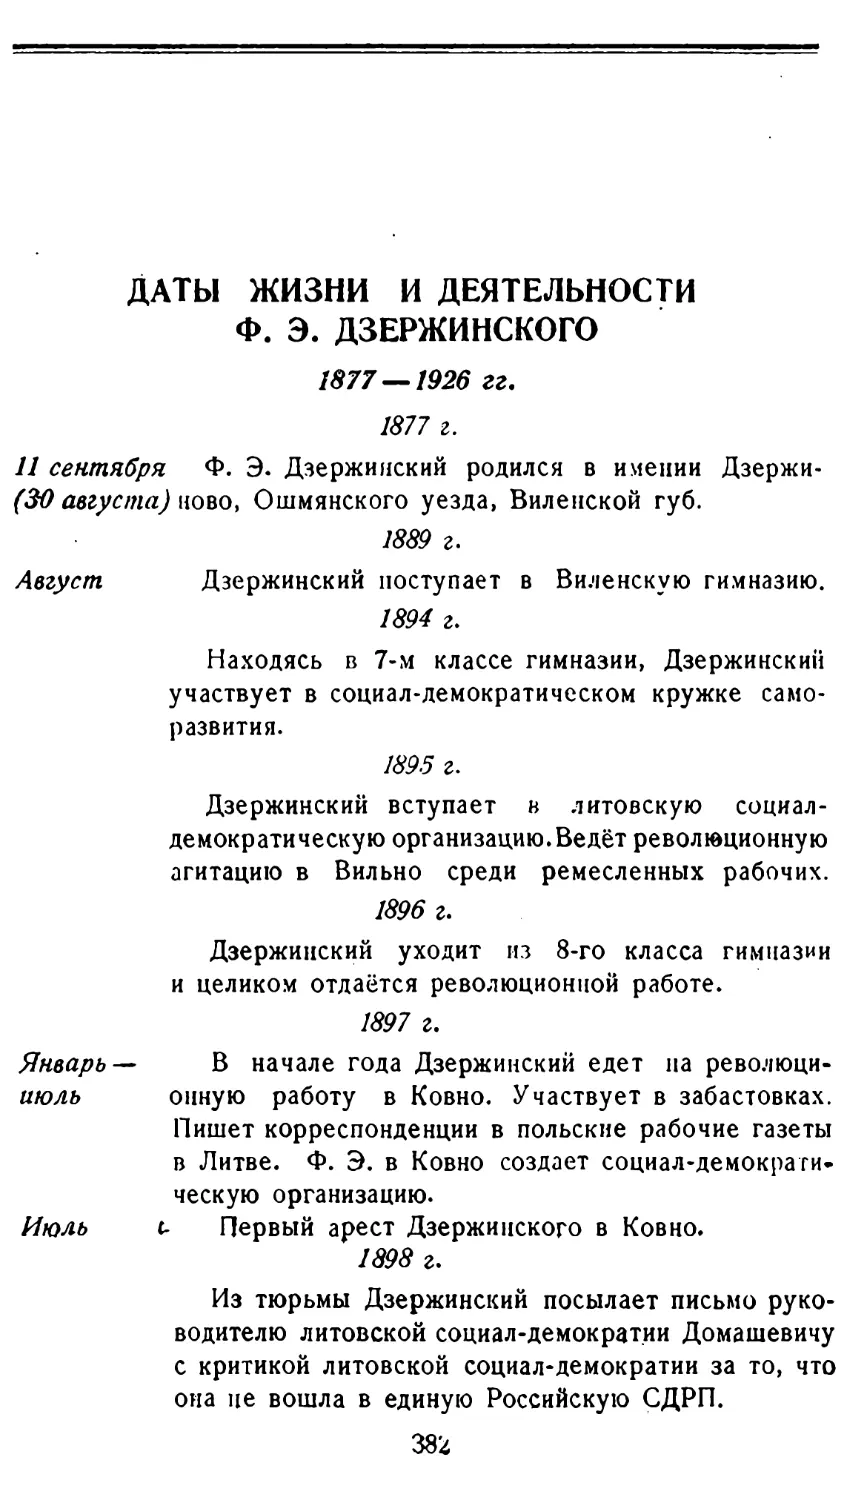 Даты жизни и деятельности Ф. Э. Дзержинского